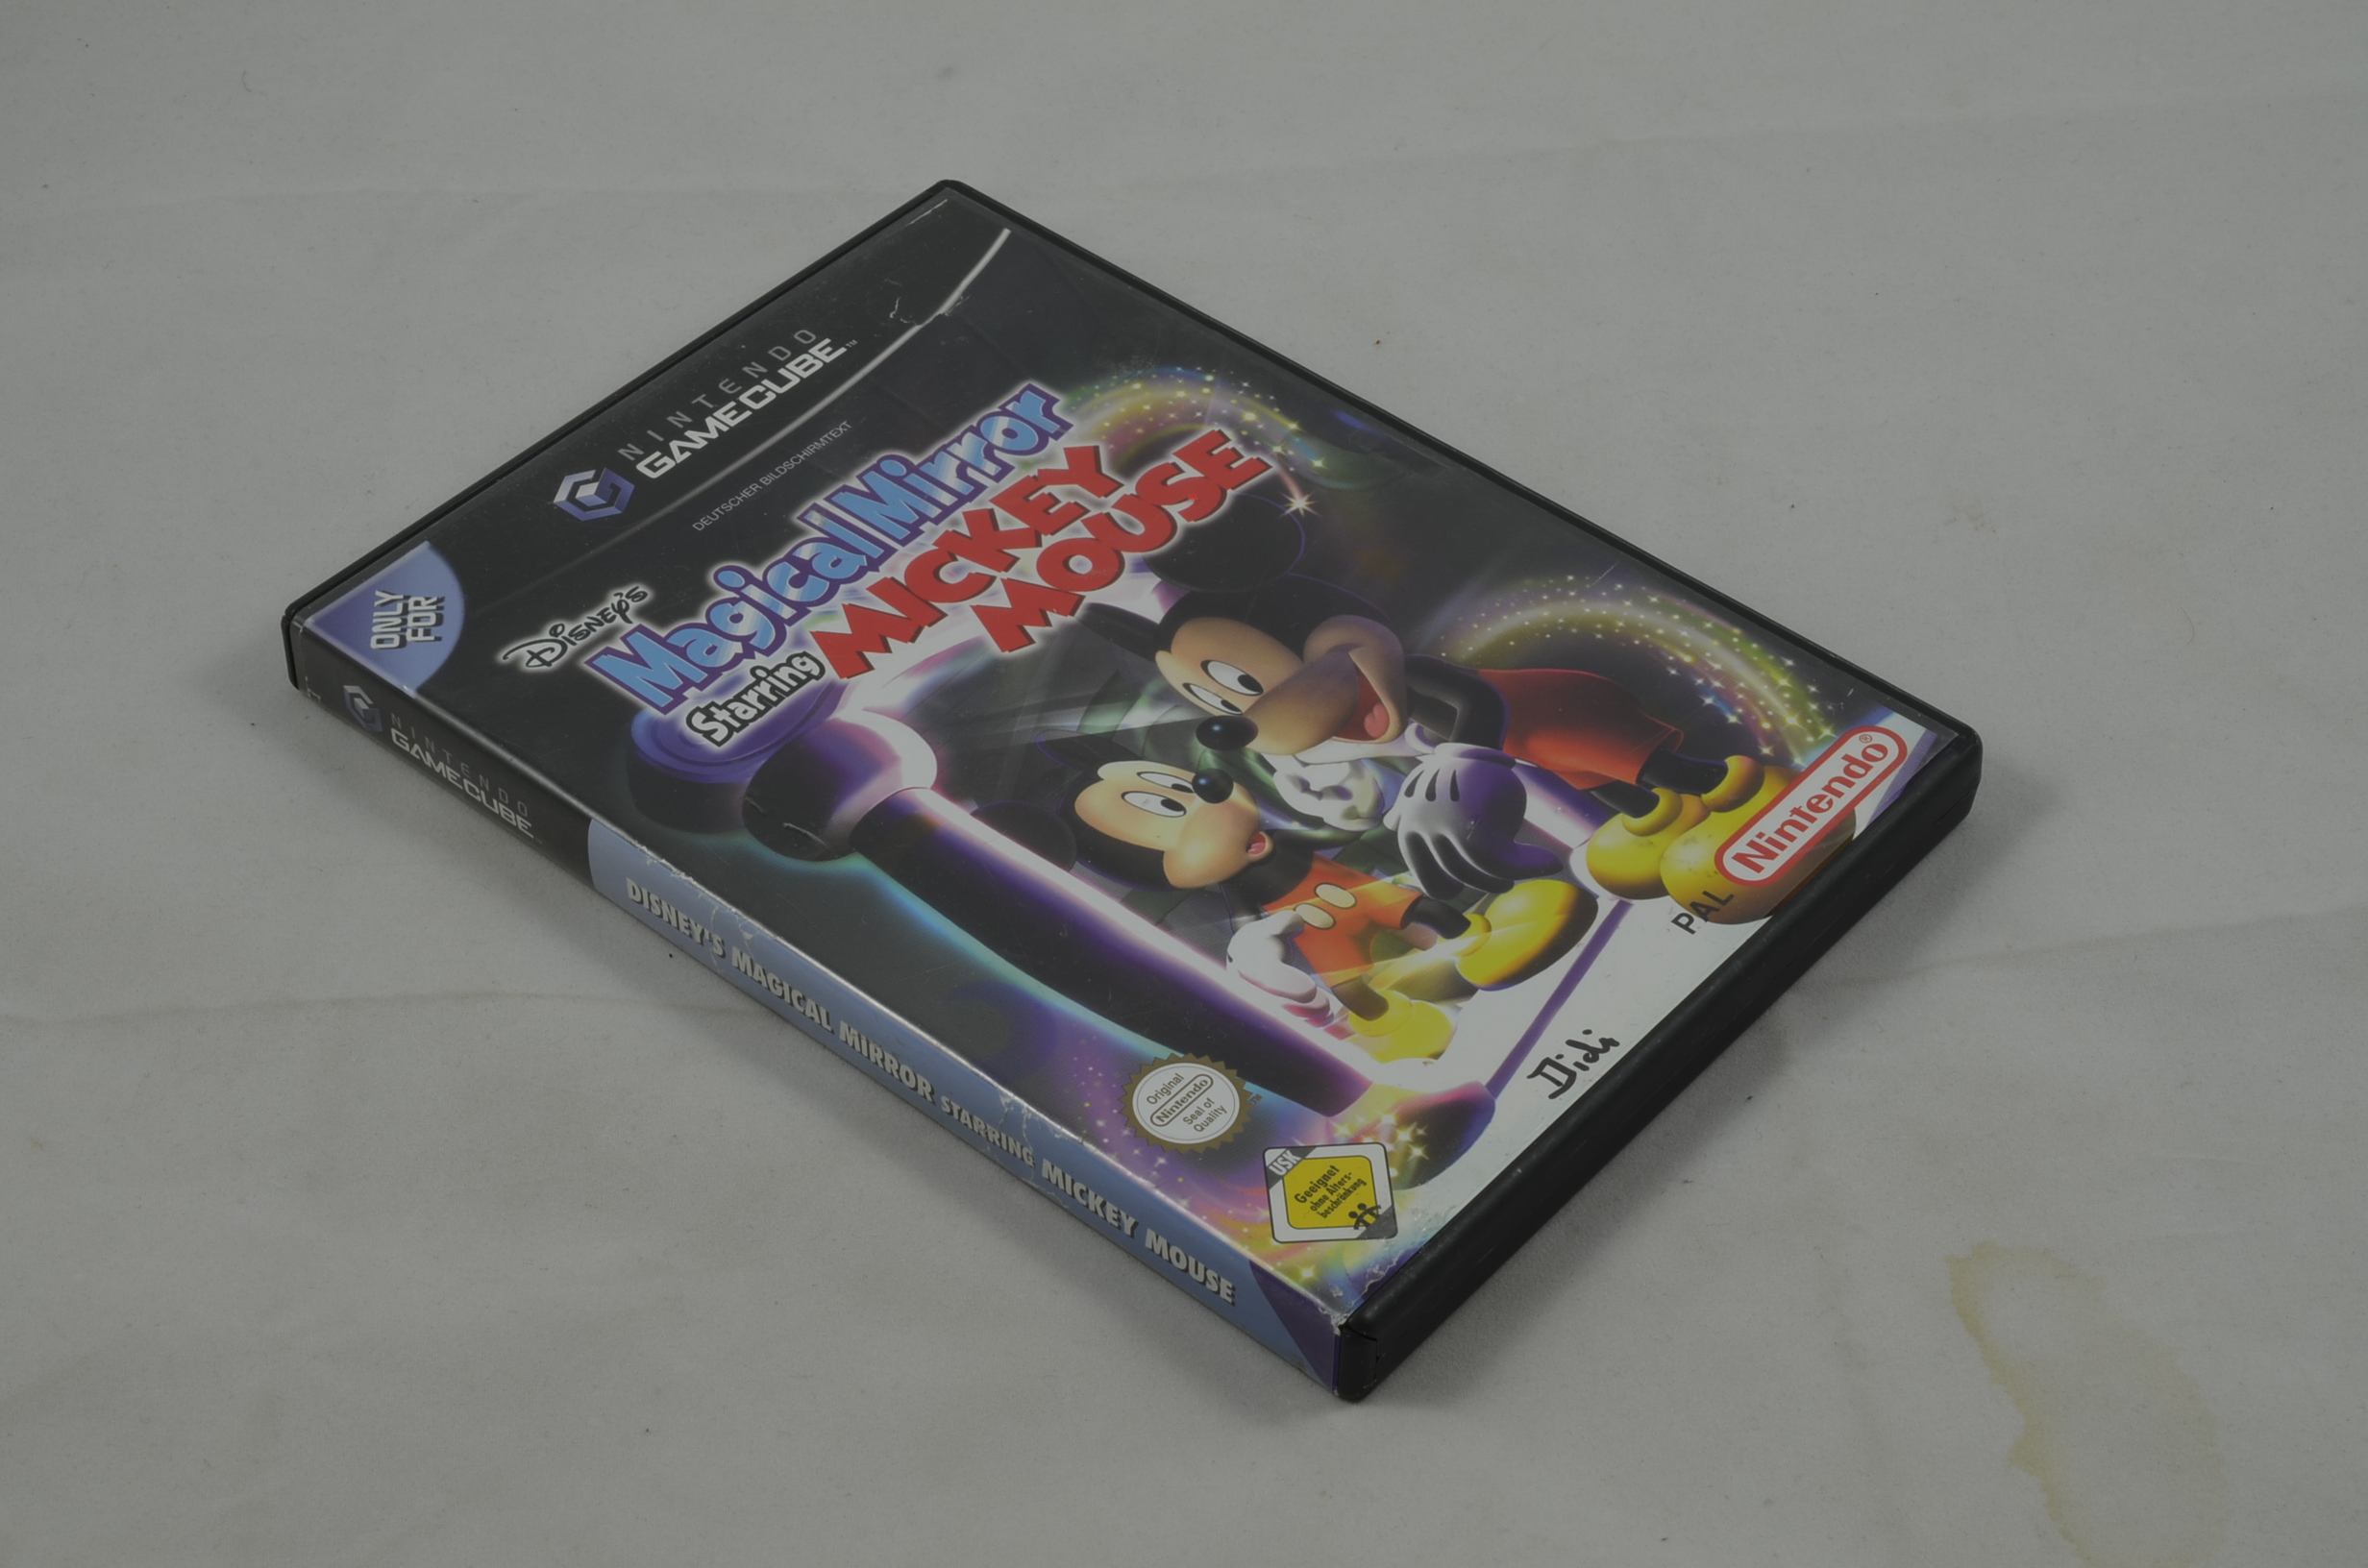 Produktbild von Magical Mirror Starring Mickey Mouse GameCube Spiel CB